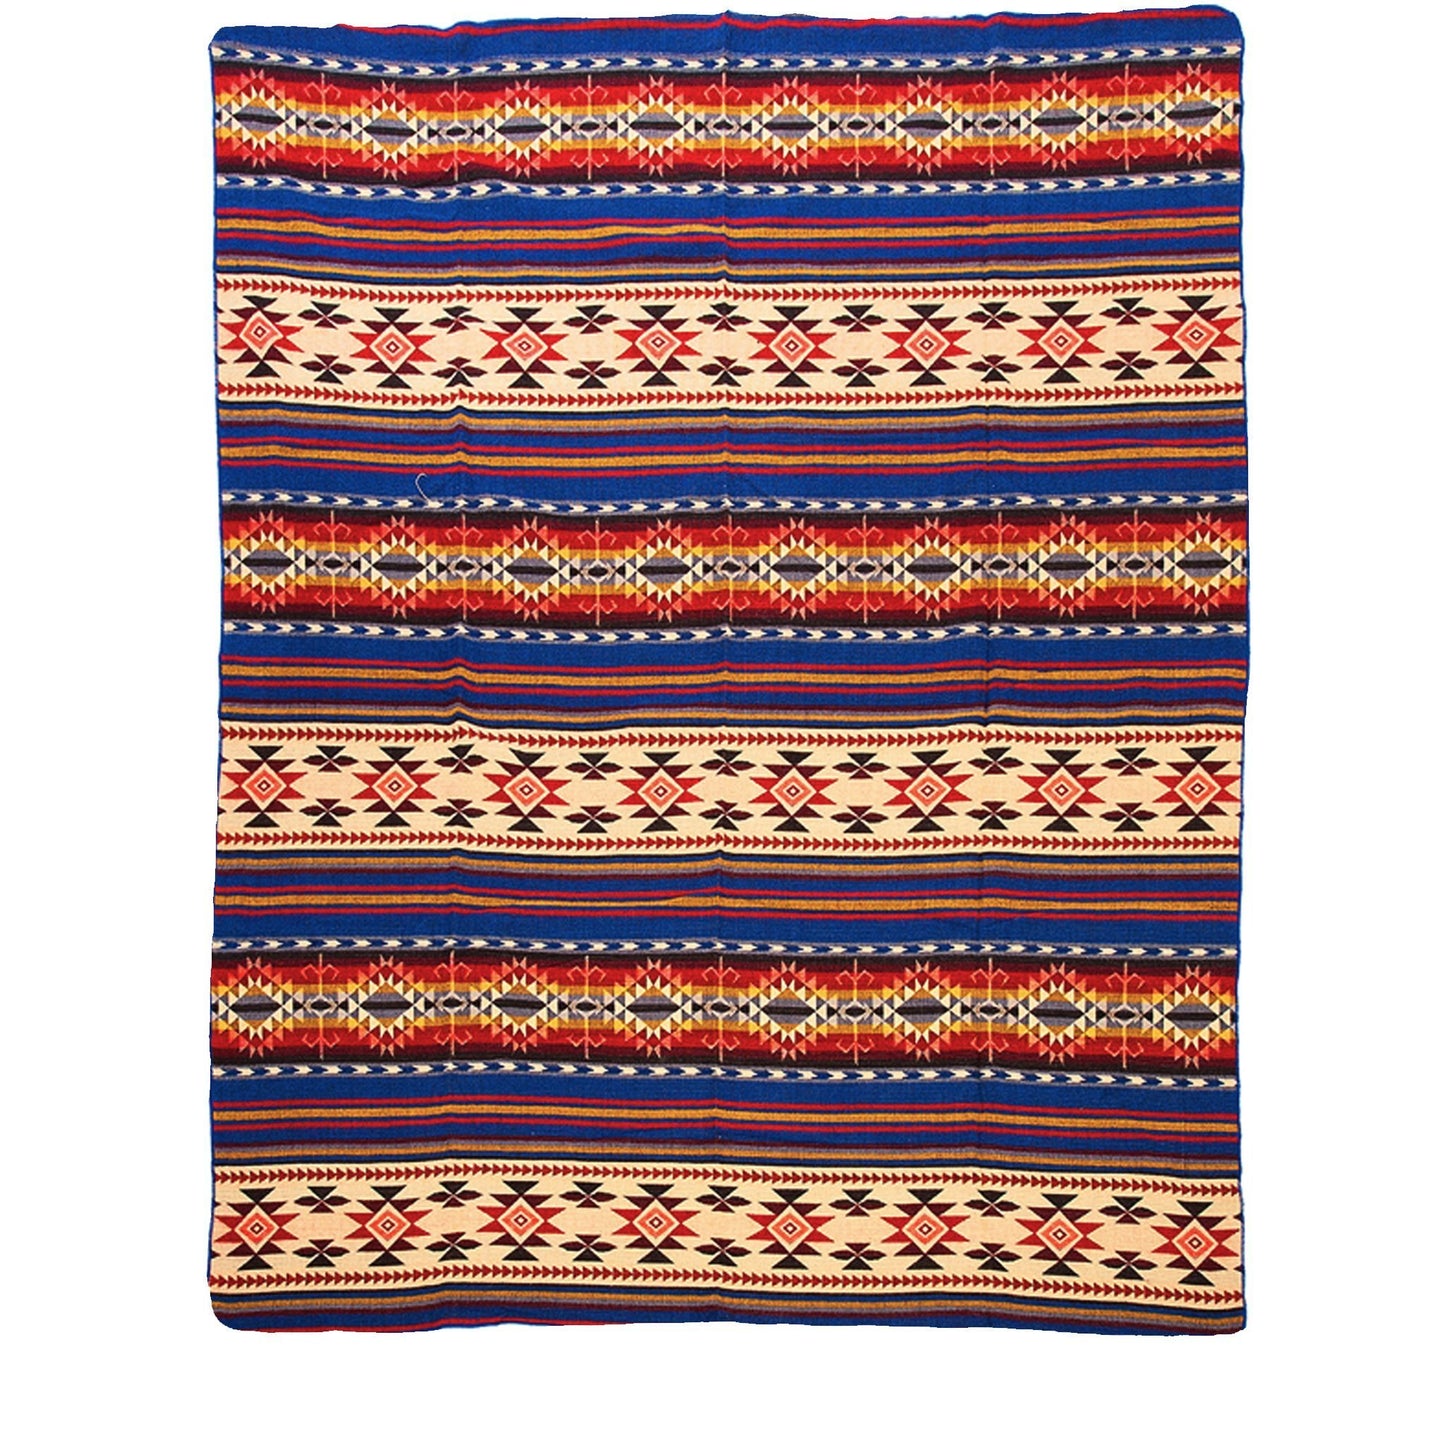 Authentische Cotopaxi Decke aus blauer Alpaka Wolle - 195 x 235 cm - Vandeley